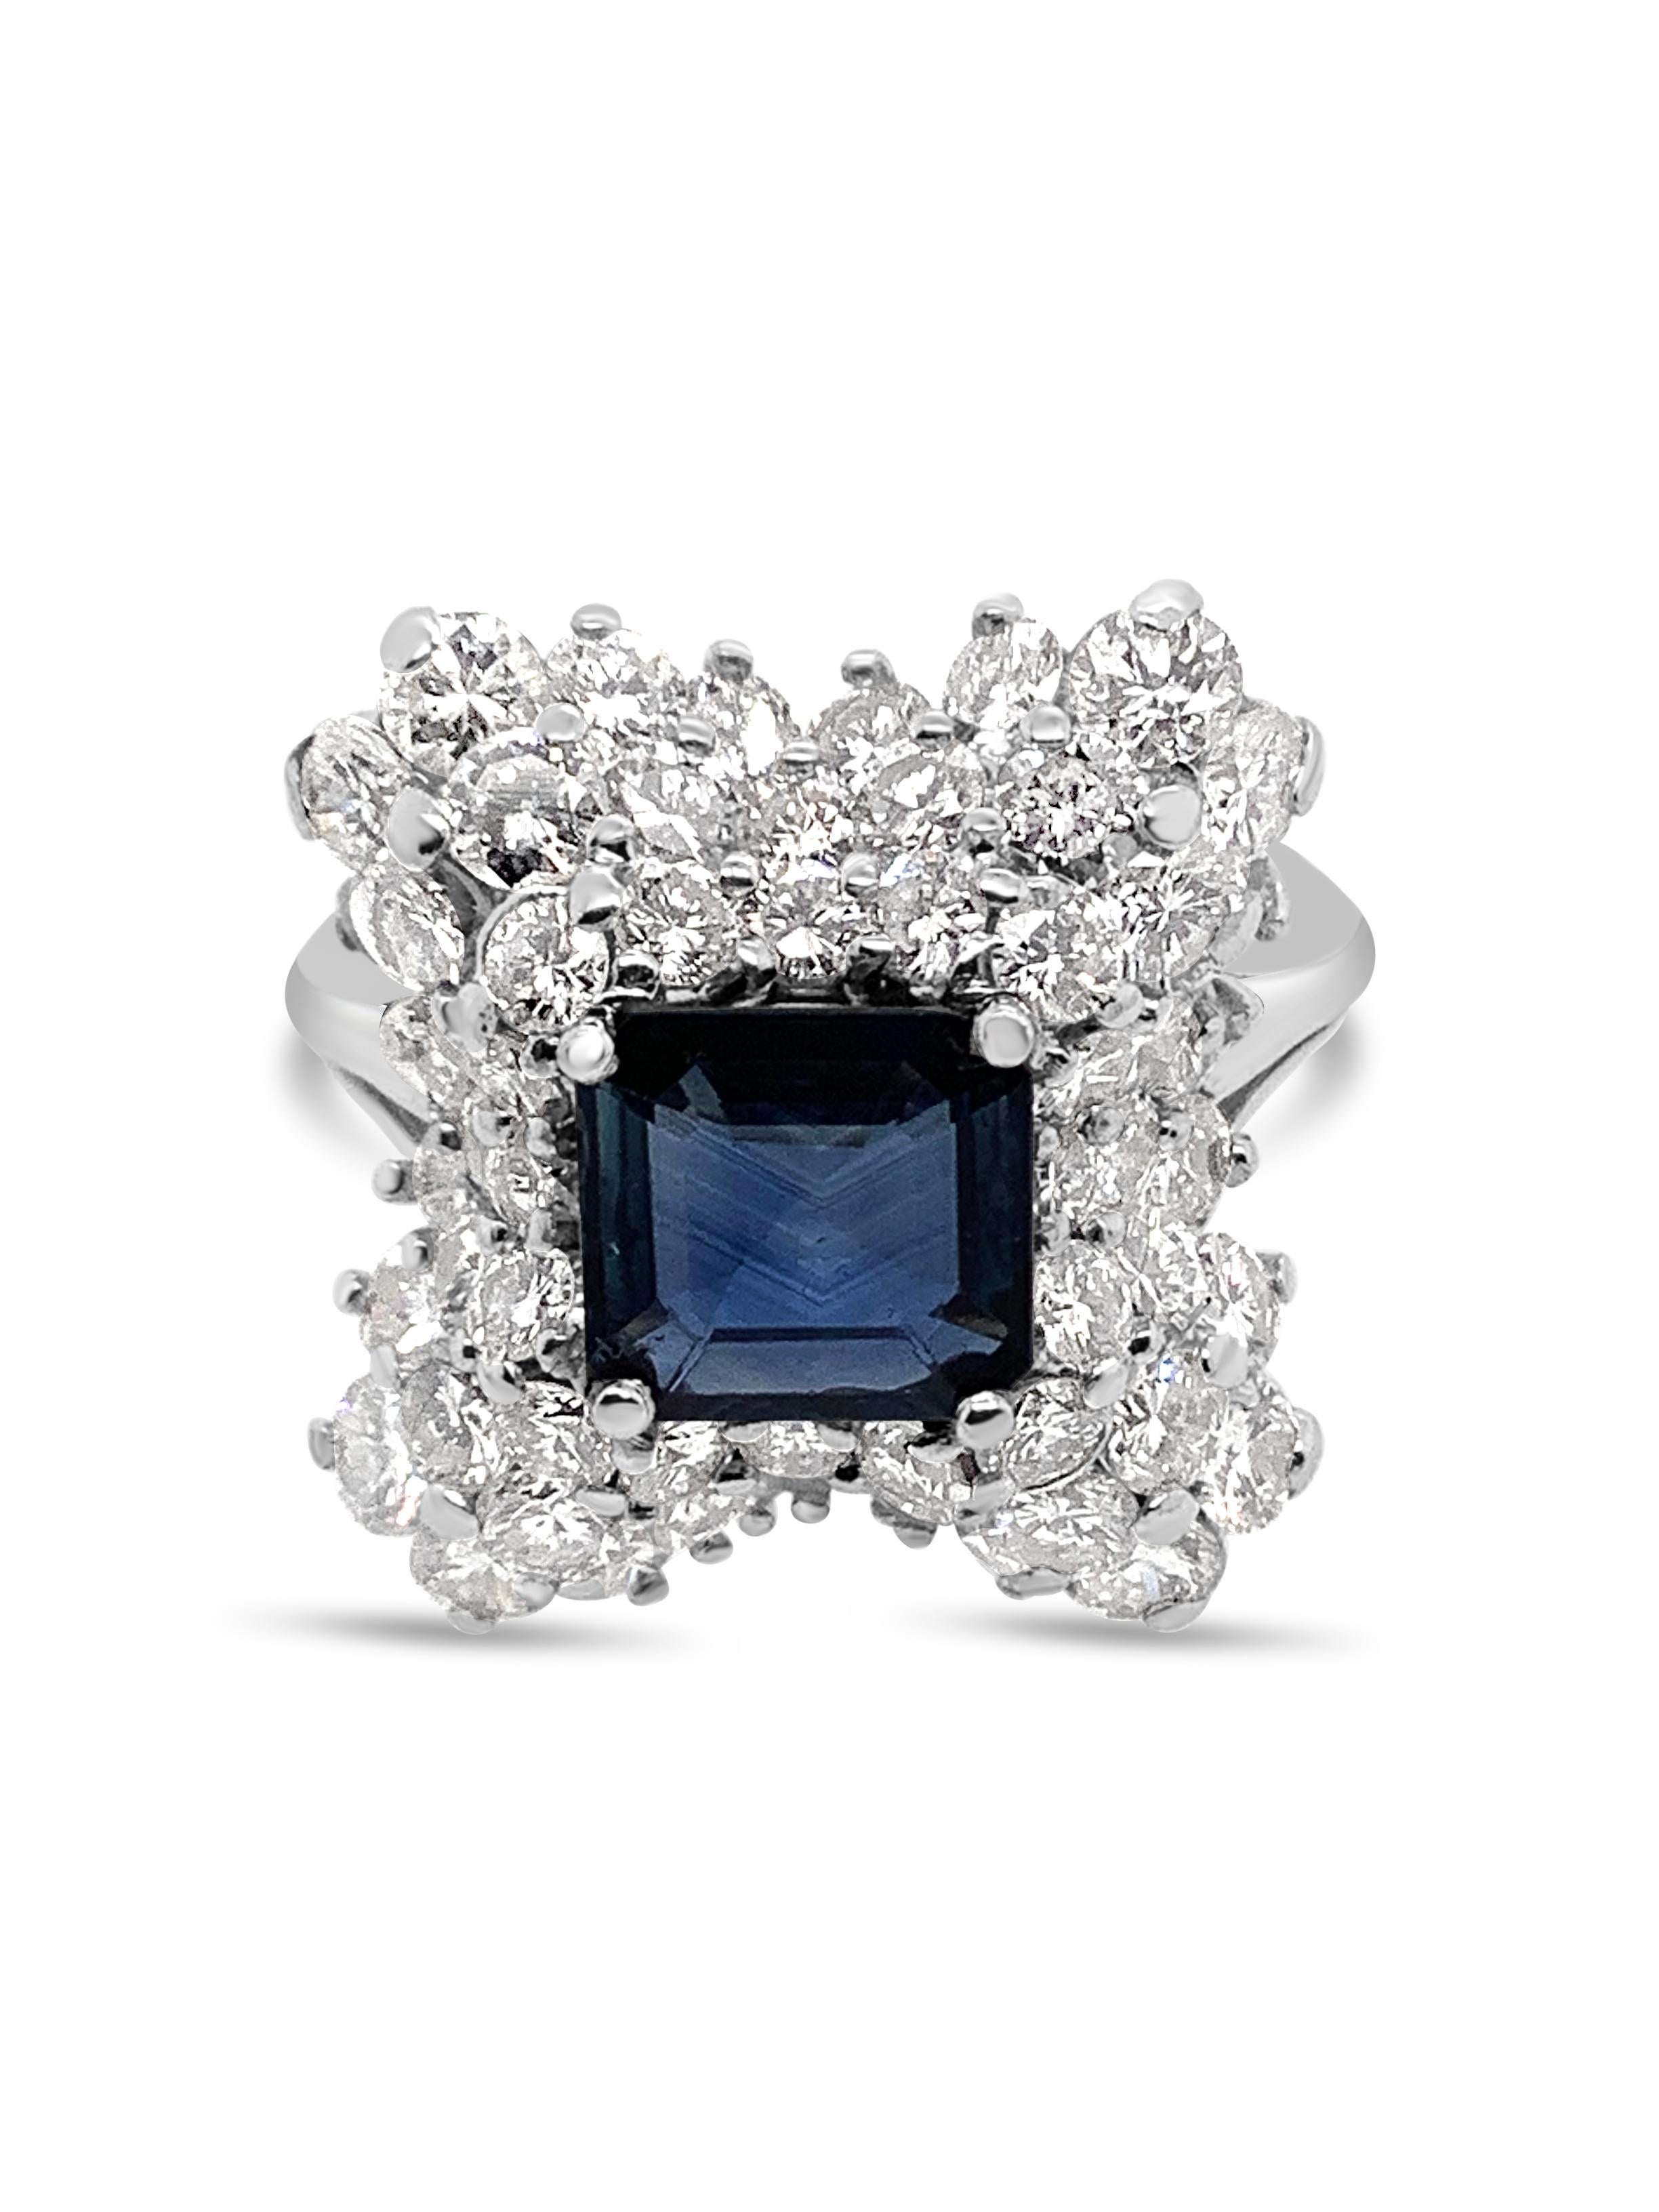 Vintage 1960s Sapphire & Diamond Ring.  Le saphir fait 1,82 carats.  Les diamants ont un poids total de 3,00 carats et sont sertis dans un halo de grappes étagées et ondulées. En platine.  La taille actuelle des doigts est de 6,5, mais des tailles